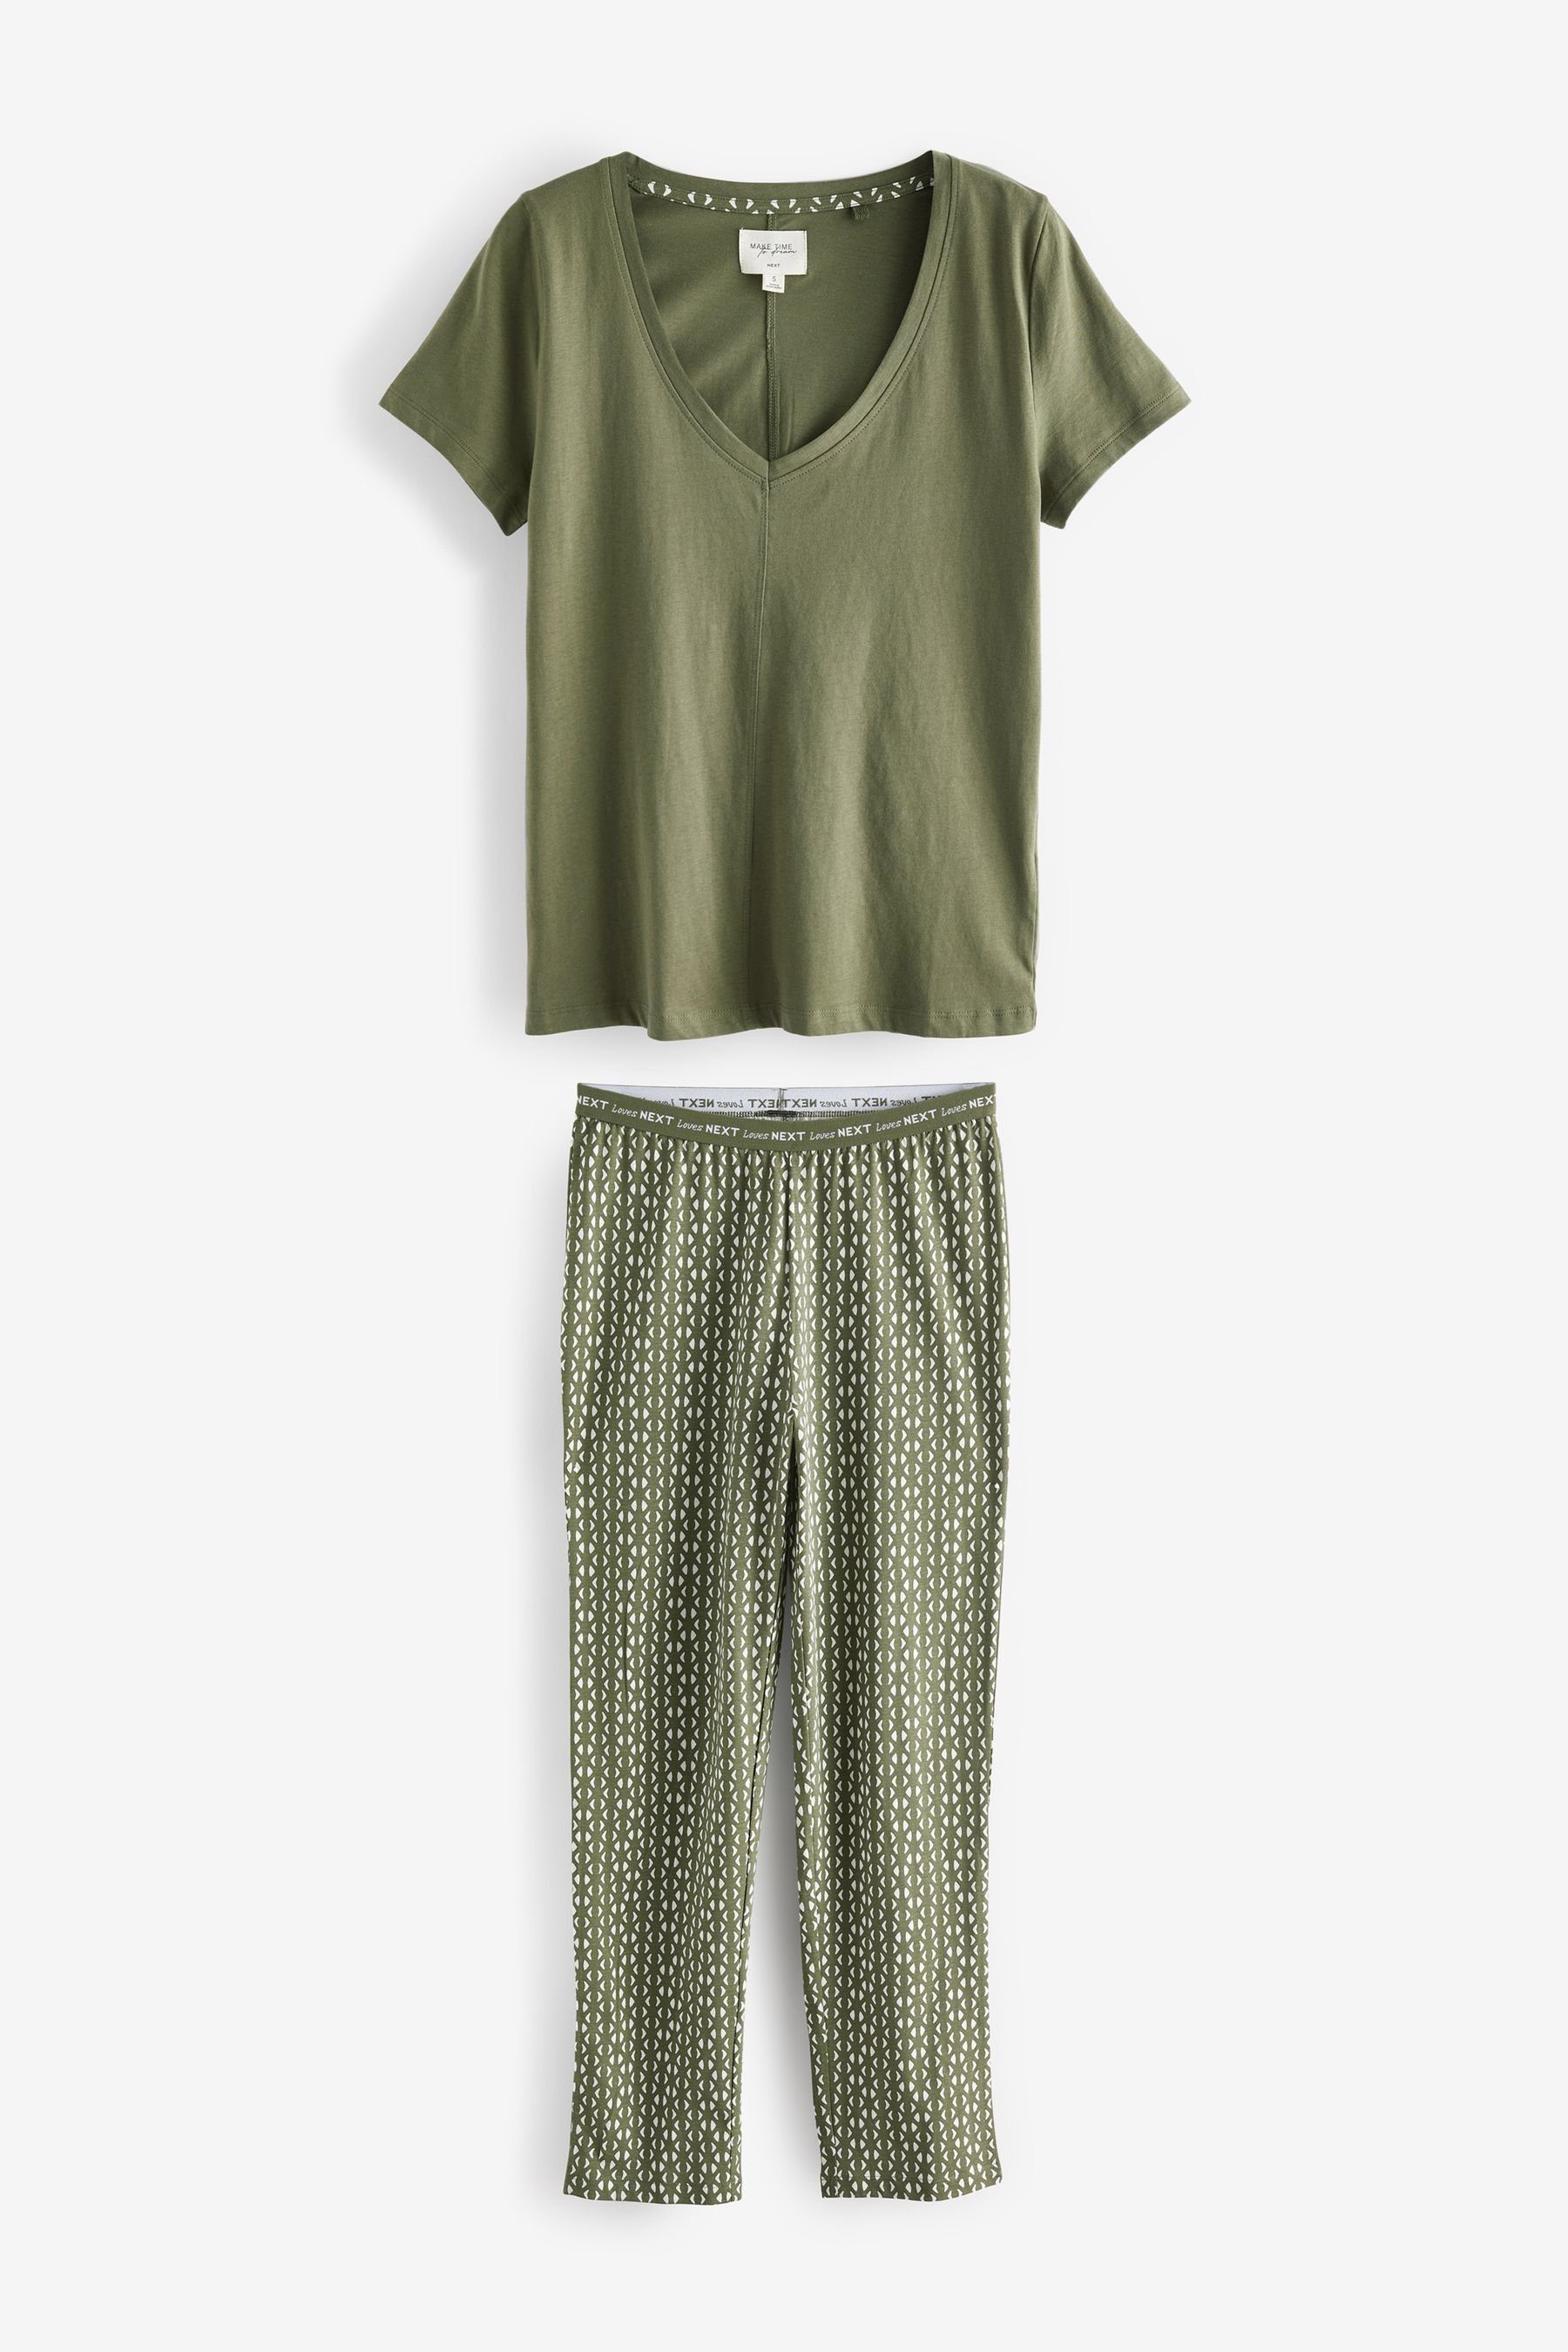 Next (2 Pyjama Baumwoll-Pyjama Kurzärmeliger Khaki tlg)